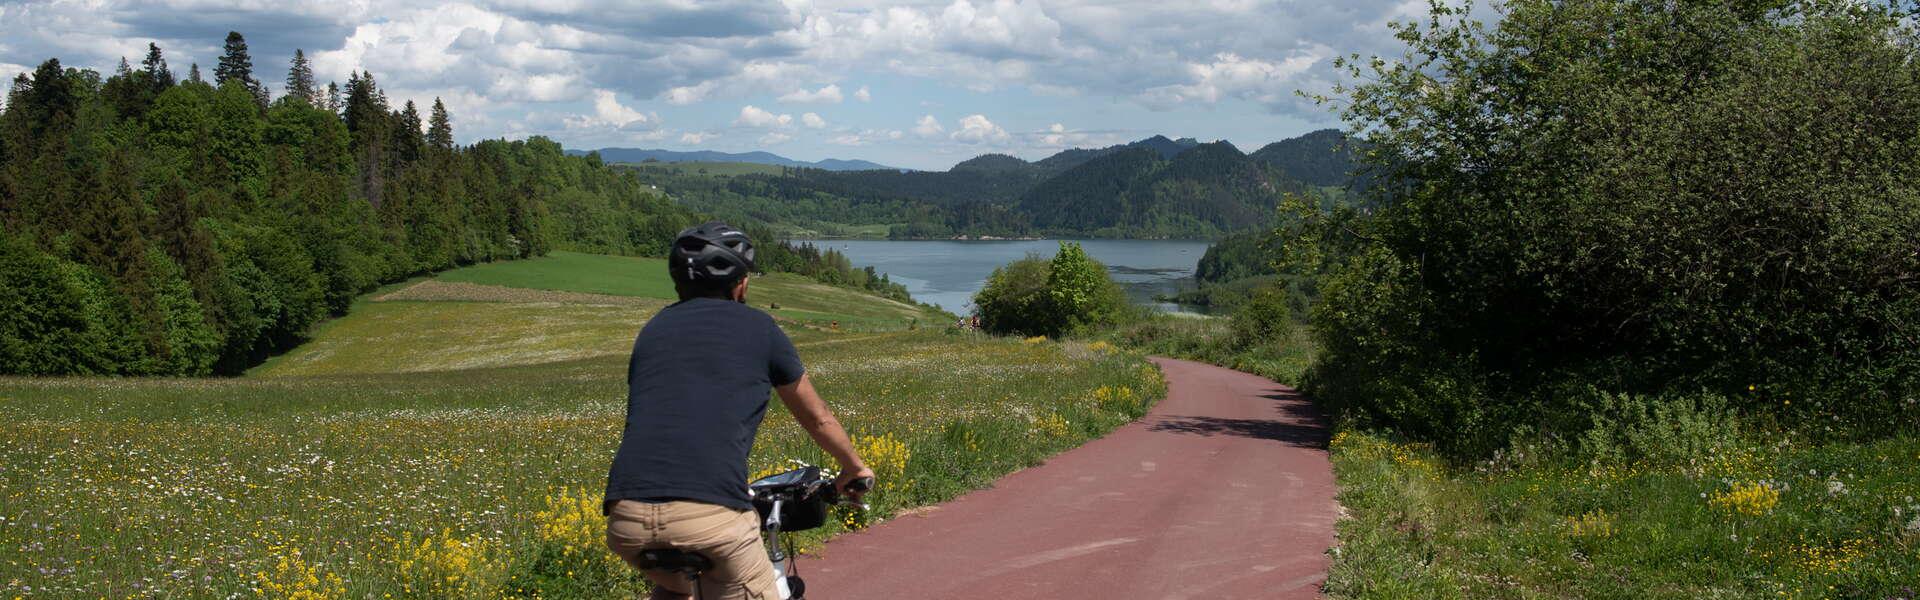 Rowerzysta z sakwami na trasie rowerowej w tle widać jezioro